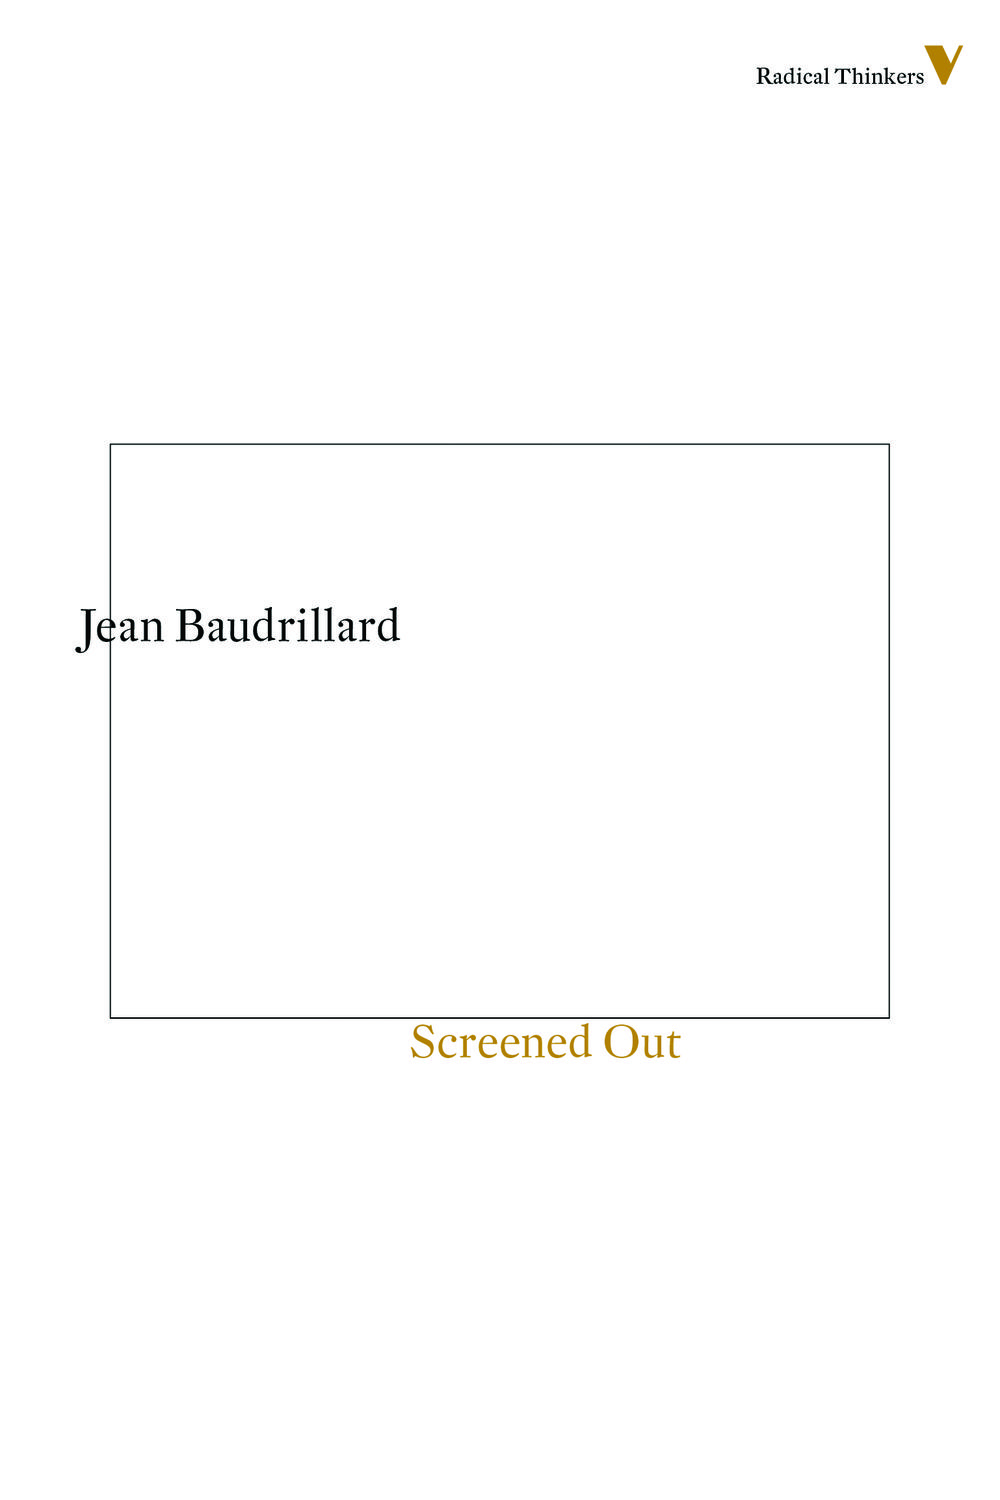 Screened Out - Jean Baudrillard